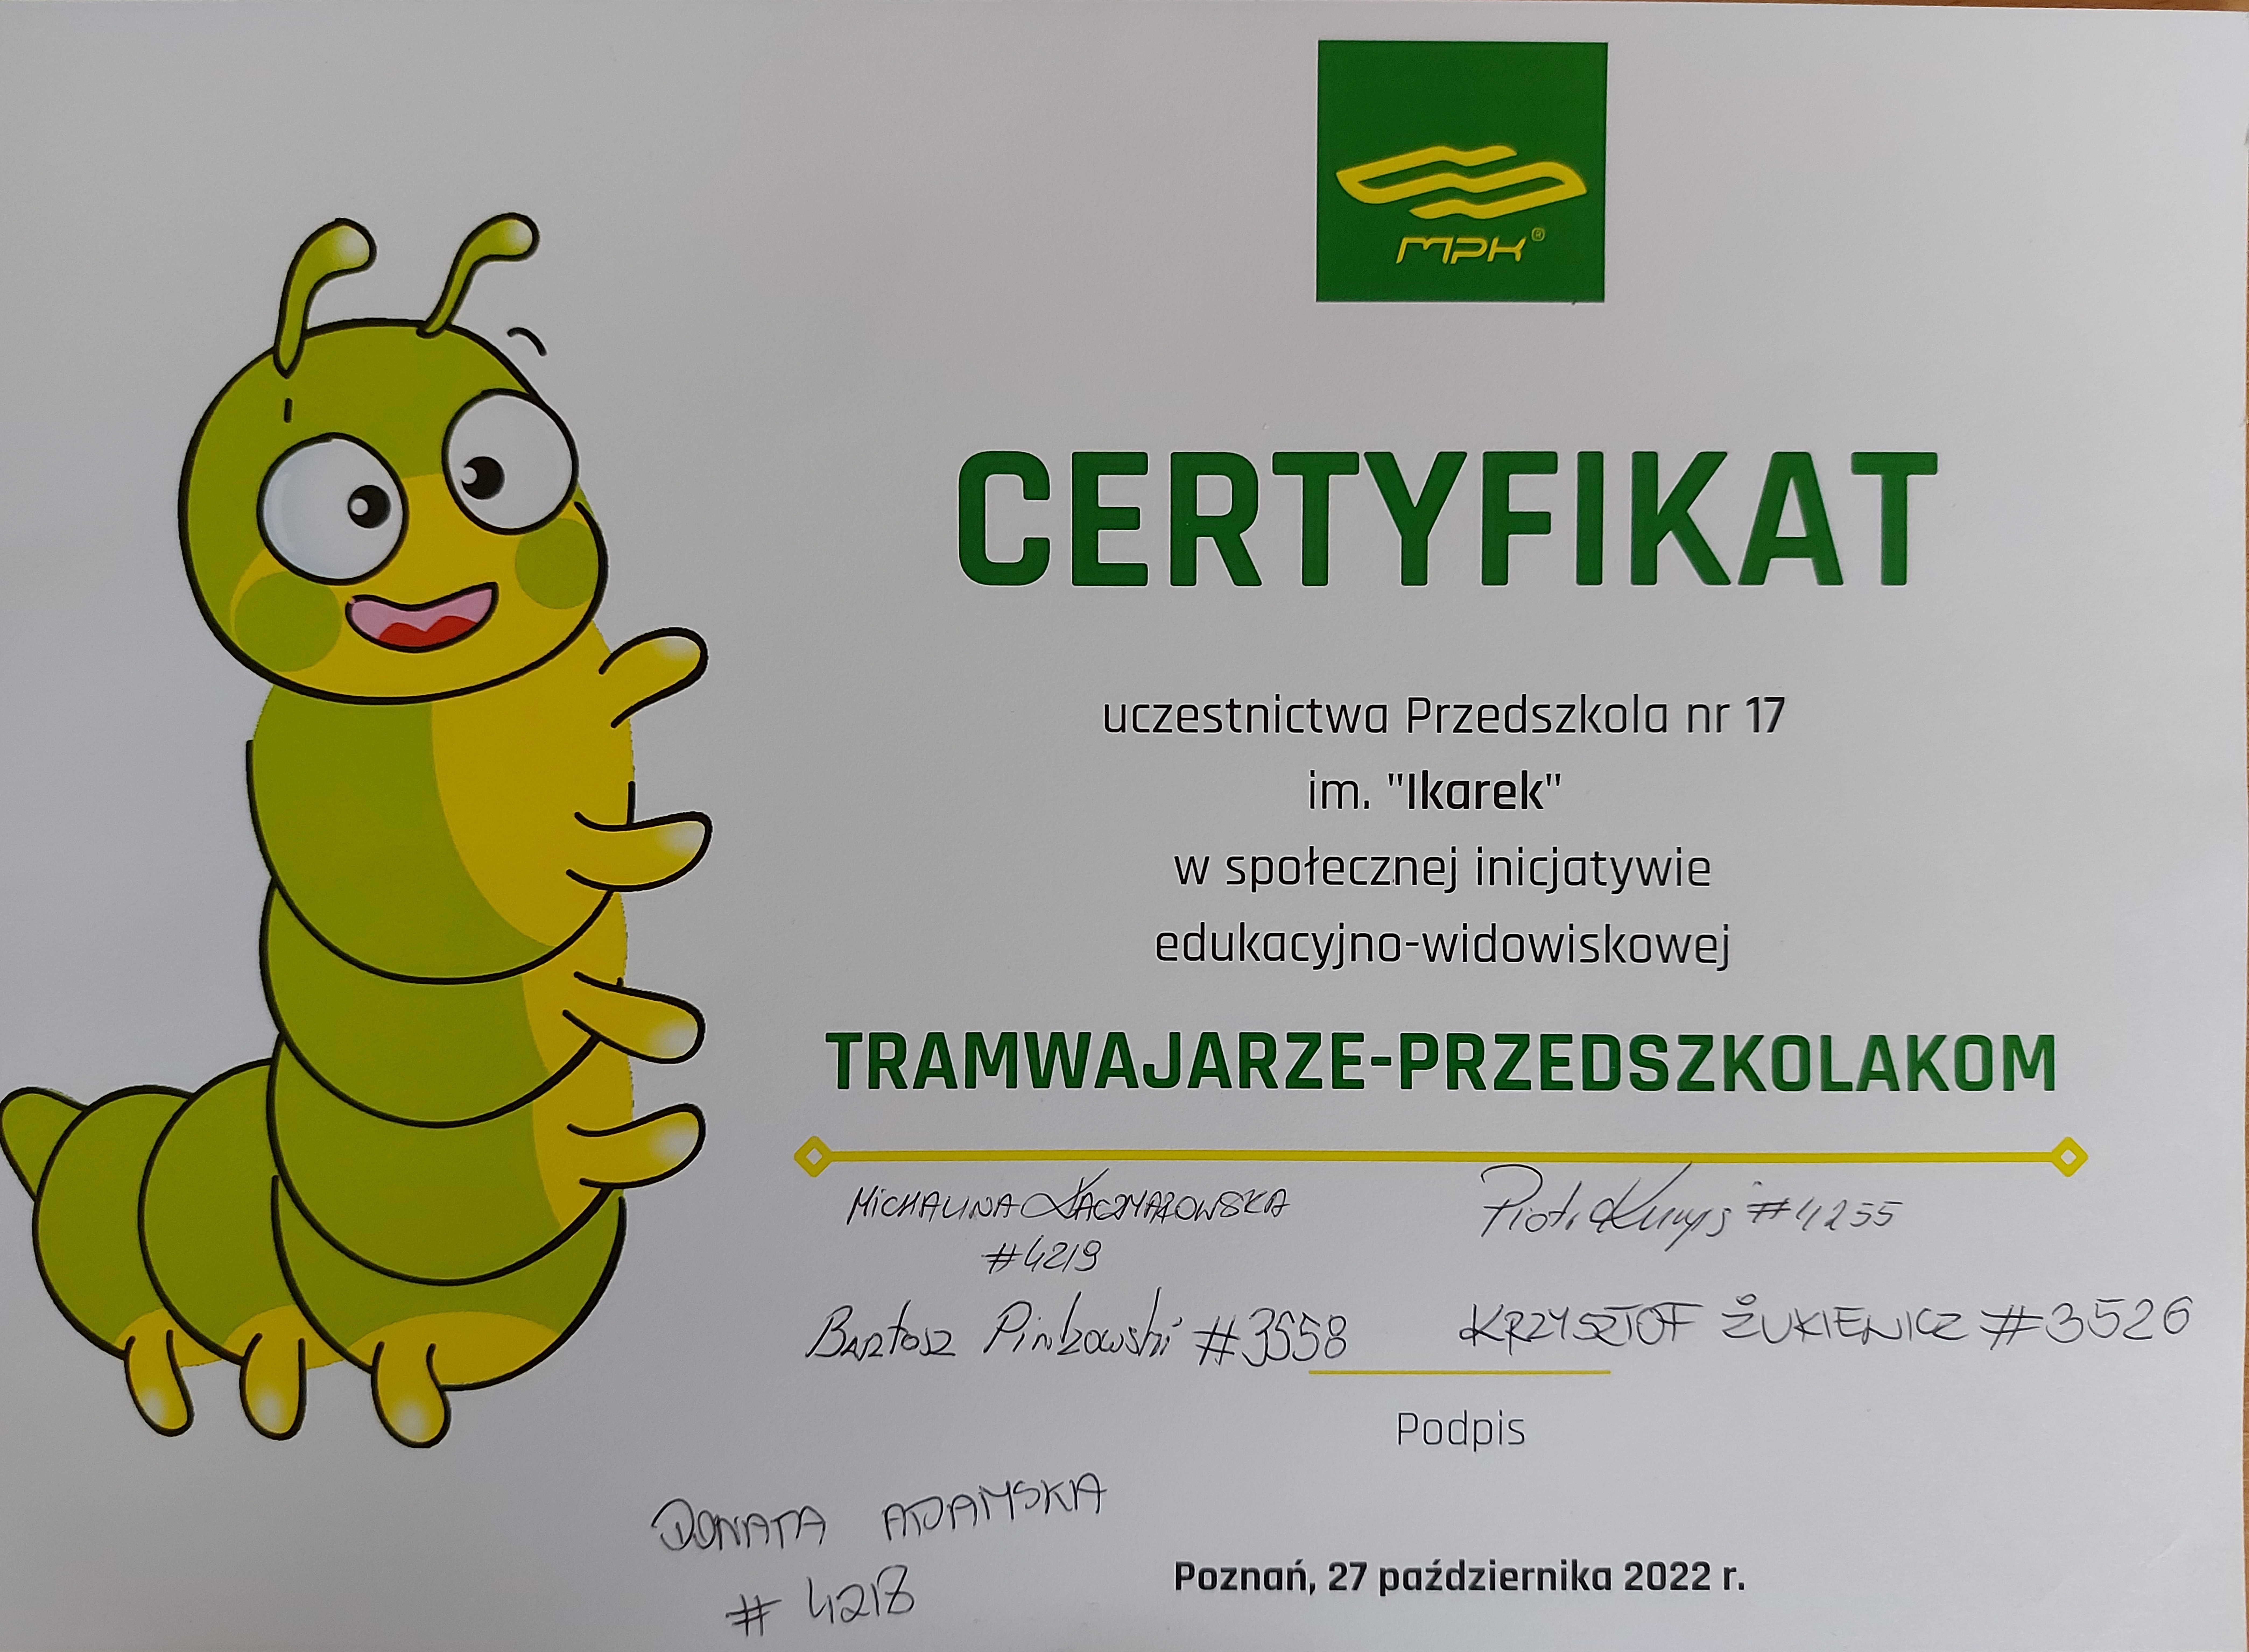 Certyfikat uczestnictwa w społecznej inicjatywie edukacyjno-widowiskowej tramwajarze-przedszkolakom